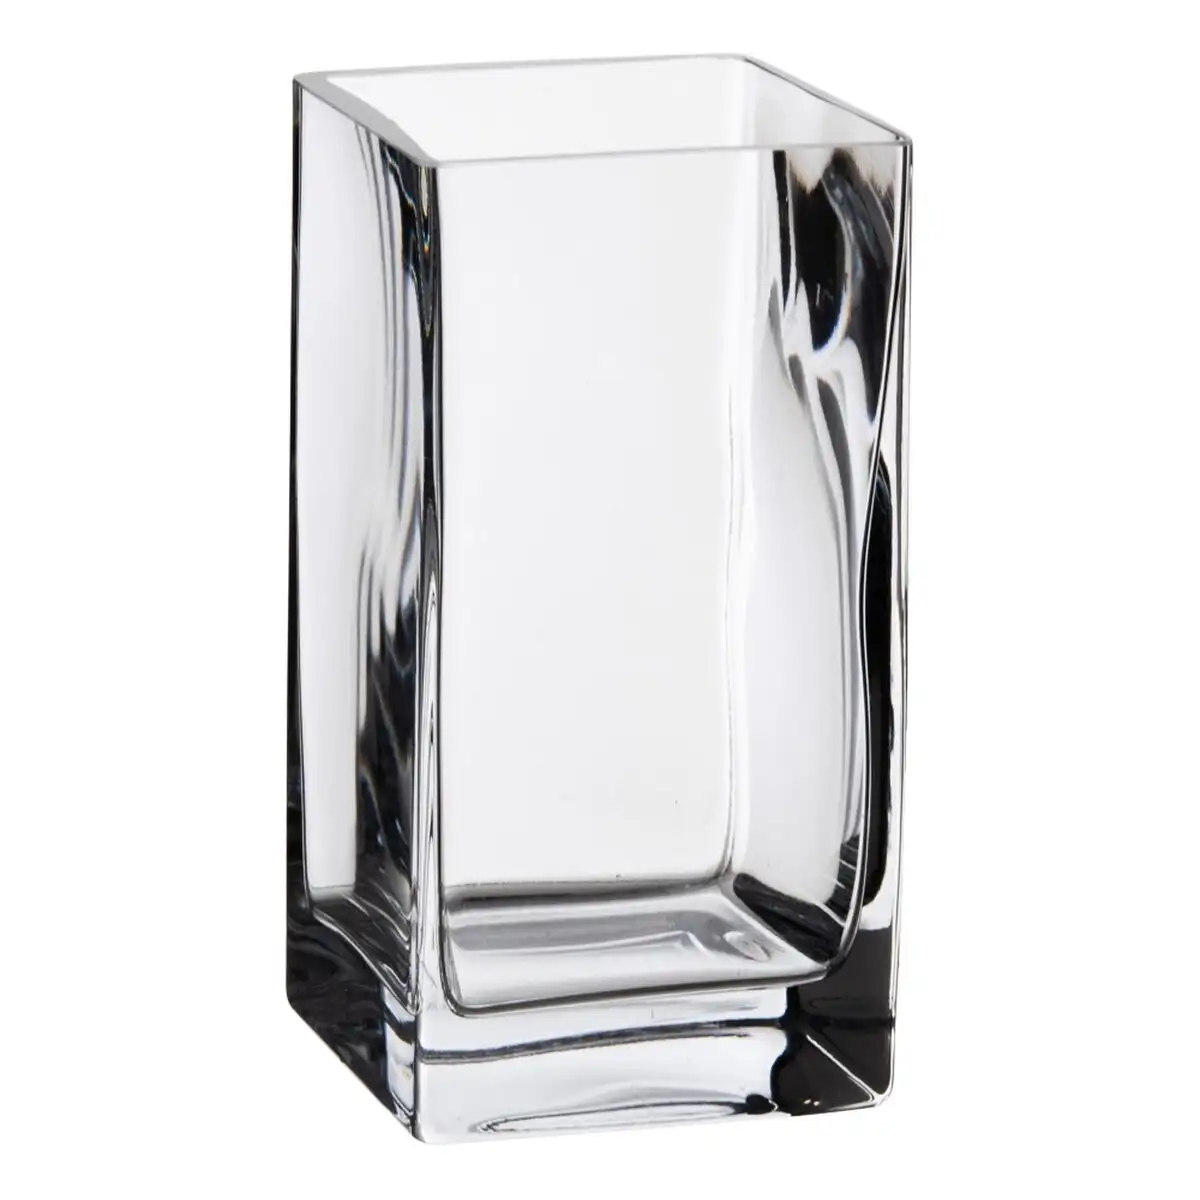 Vase cristal transparent 10 x 10 x 20 cm_7555. DIAYTAR SENEGAL - Où la Qualité et la Diversité Fusionnent. Explorez notre boutique en ligne pour découvrir une gamme variée de produits qui incarnent l'excellence et l'authenticité.